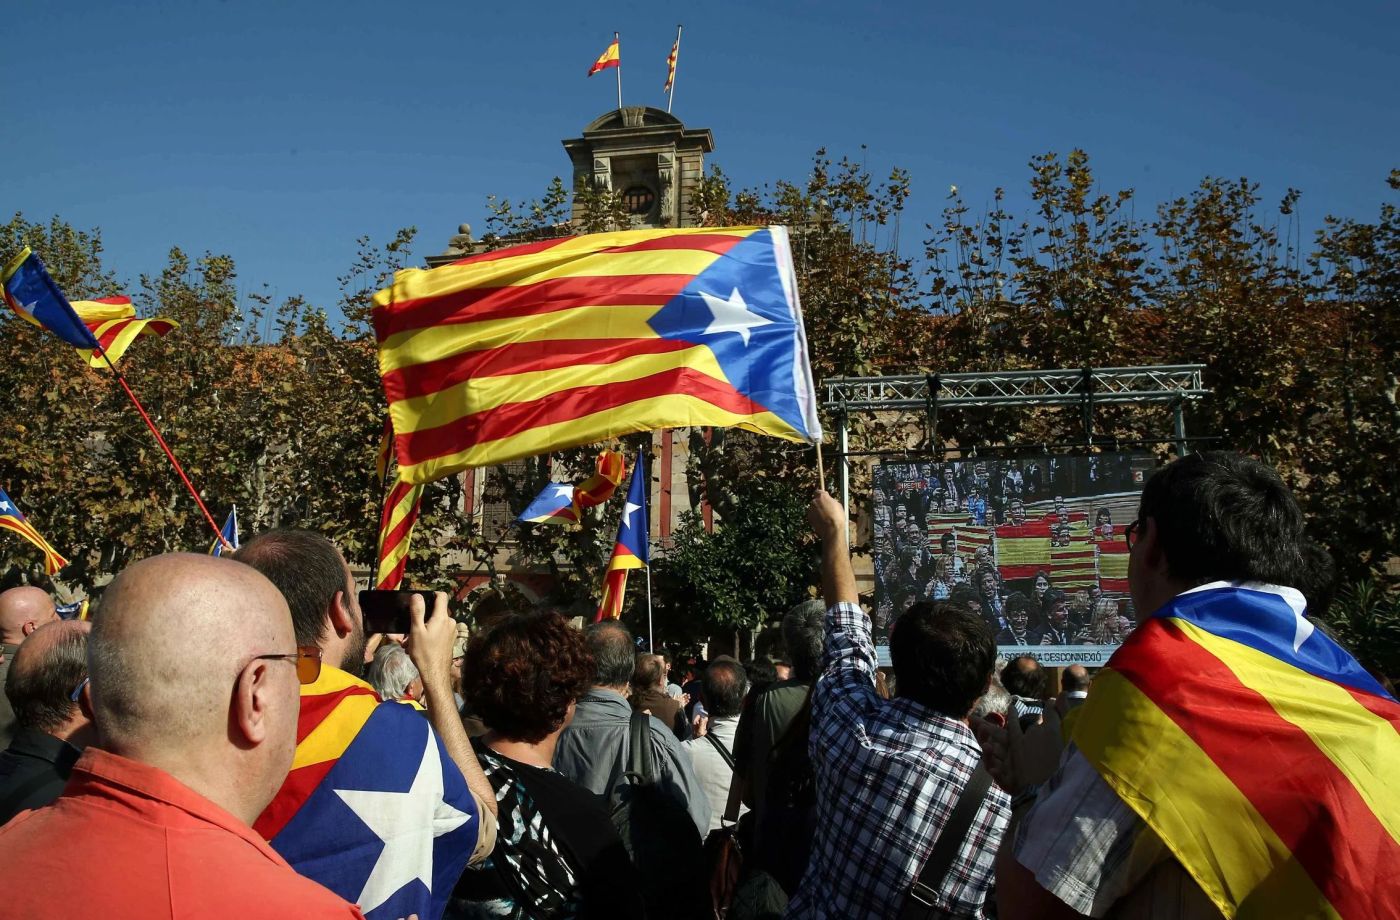 Σκάνδαλο στην Ισπανία: Οι μυστικές υπηρεσίες παραδέχθηκαν ότι κατασκόπευαν Καταλανούς αυτονομιστές